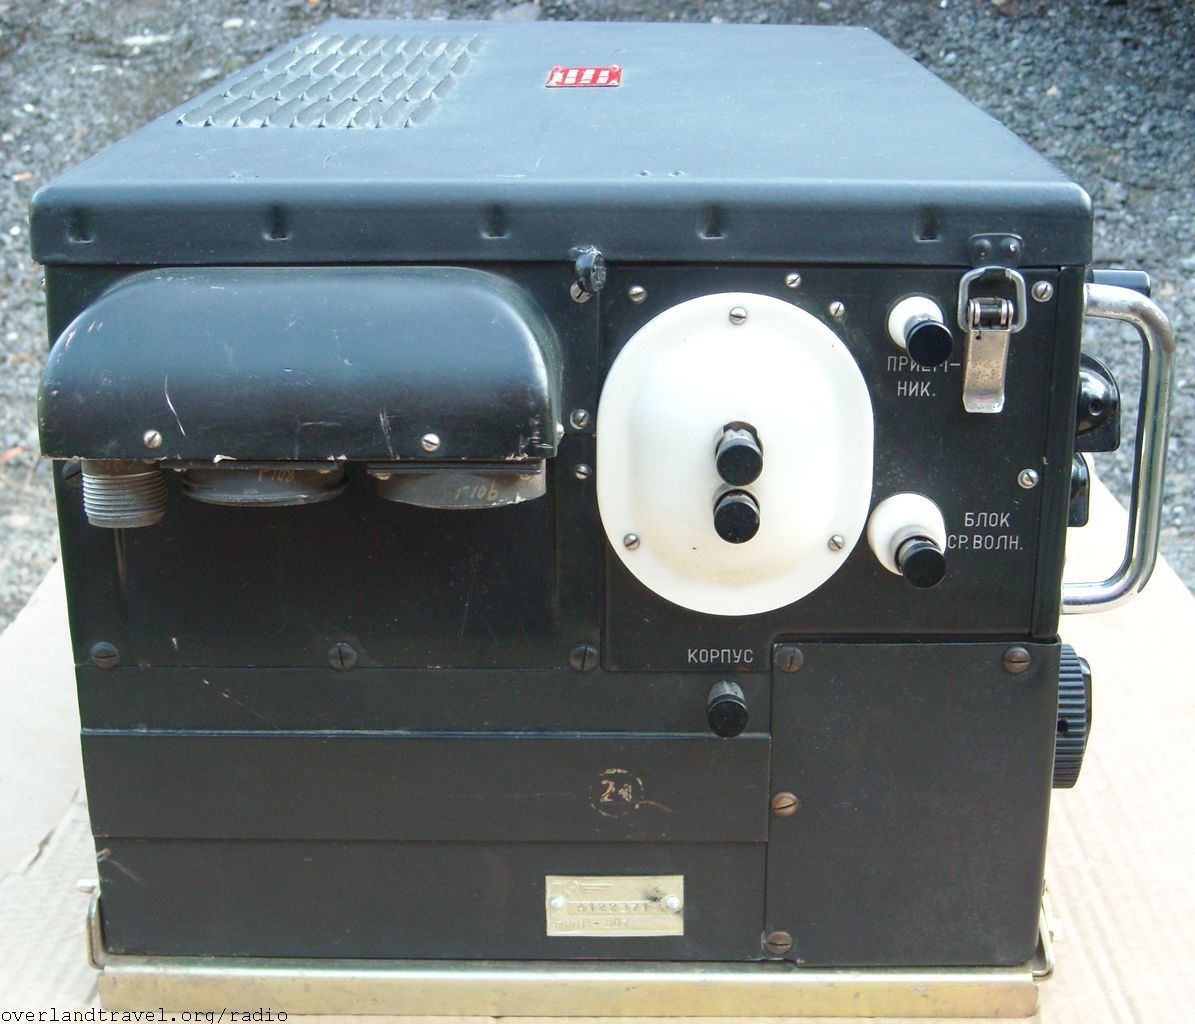 R-807 Berkut aircraft transmitter